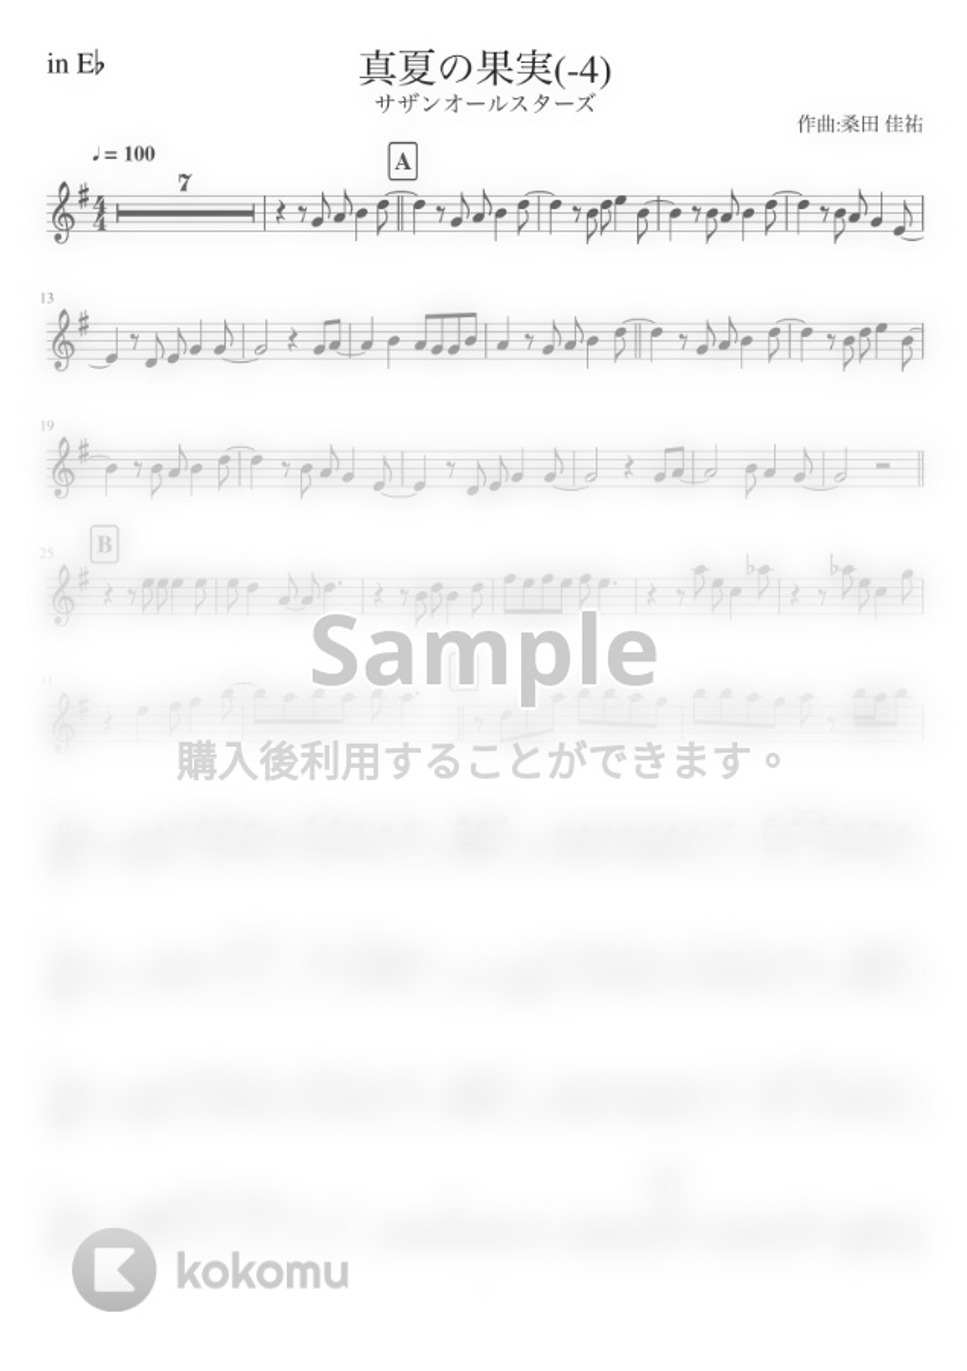 サザンオールスターズ - 真夏の果実 (in E♭/ 原曲-4キー) by inojunCH